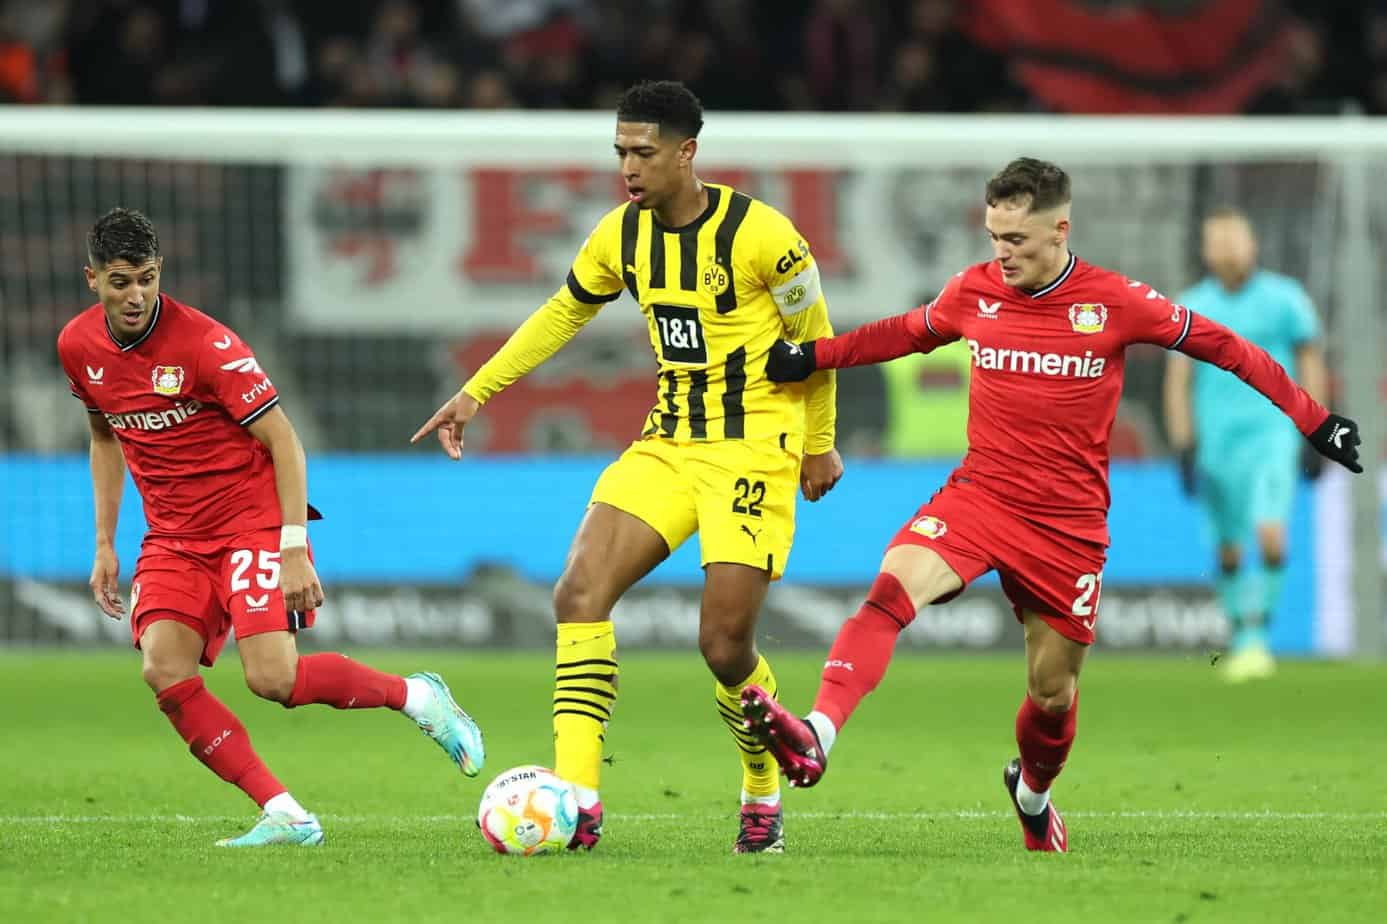 Bayer Leverkusen vs. Borussia Dortmund Preview and Free Pick